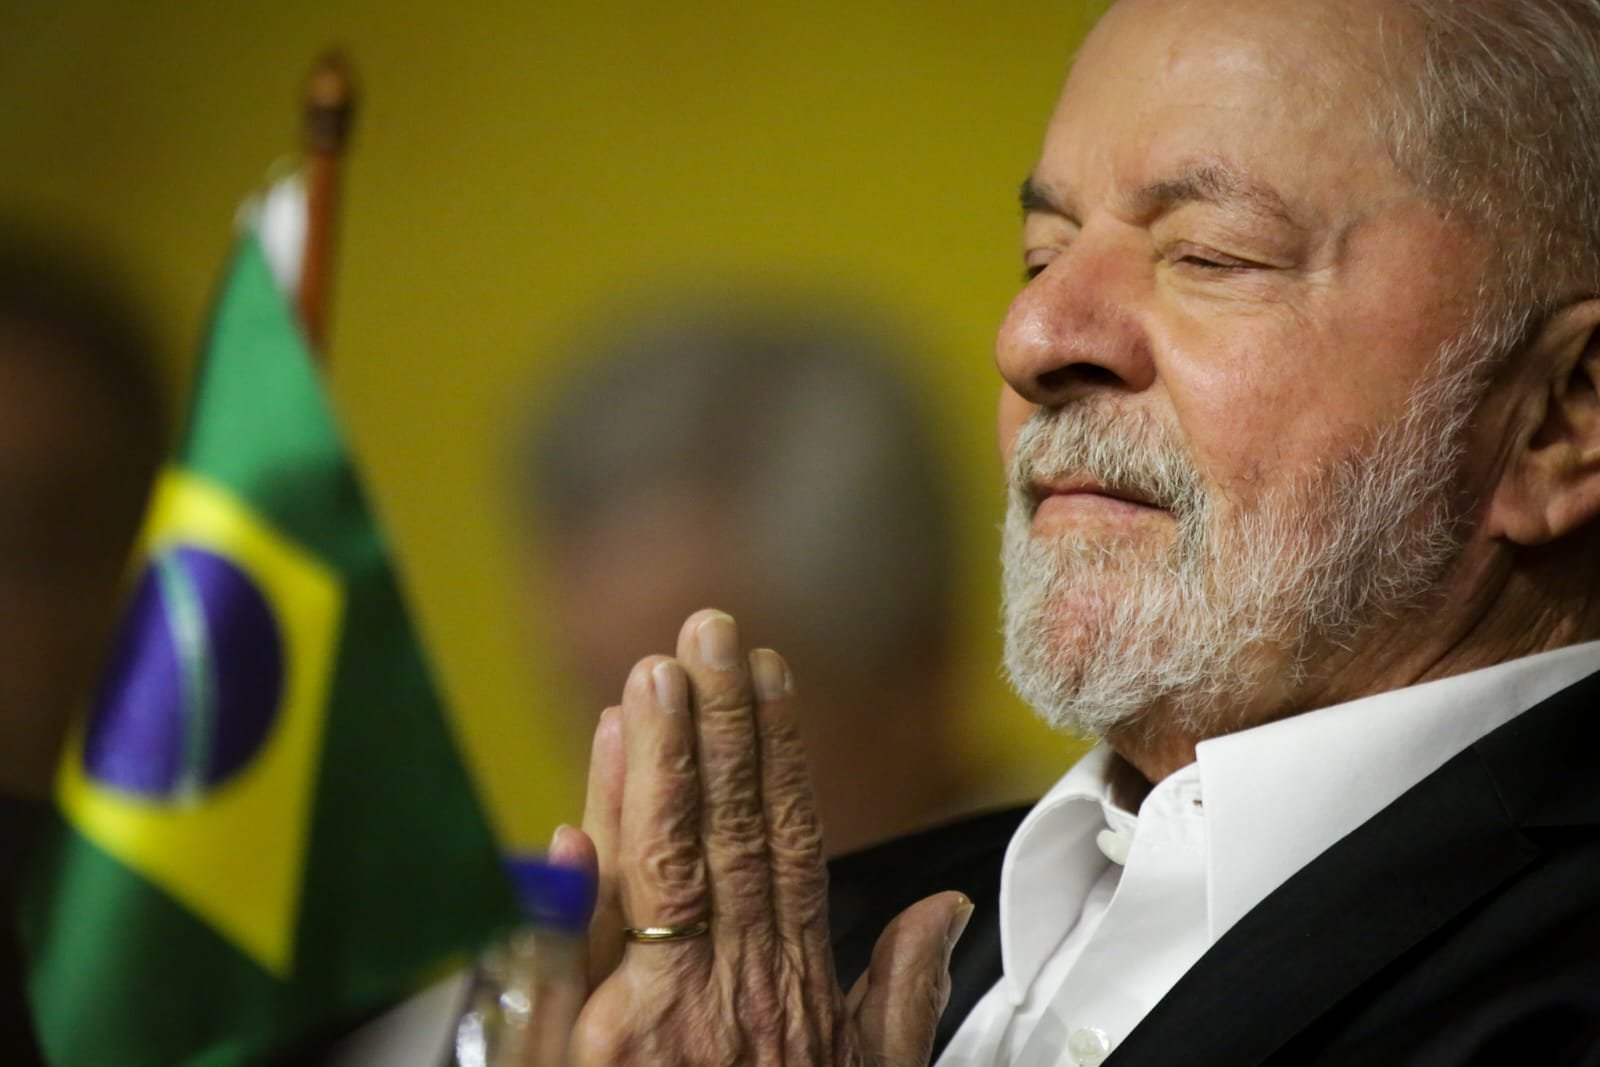 De olho no público evangélico, governo Lula lança propaganda com